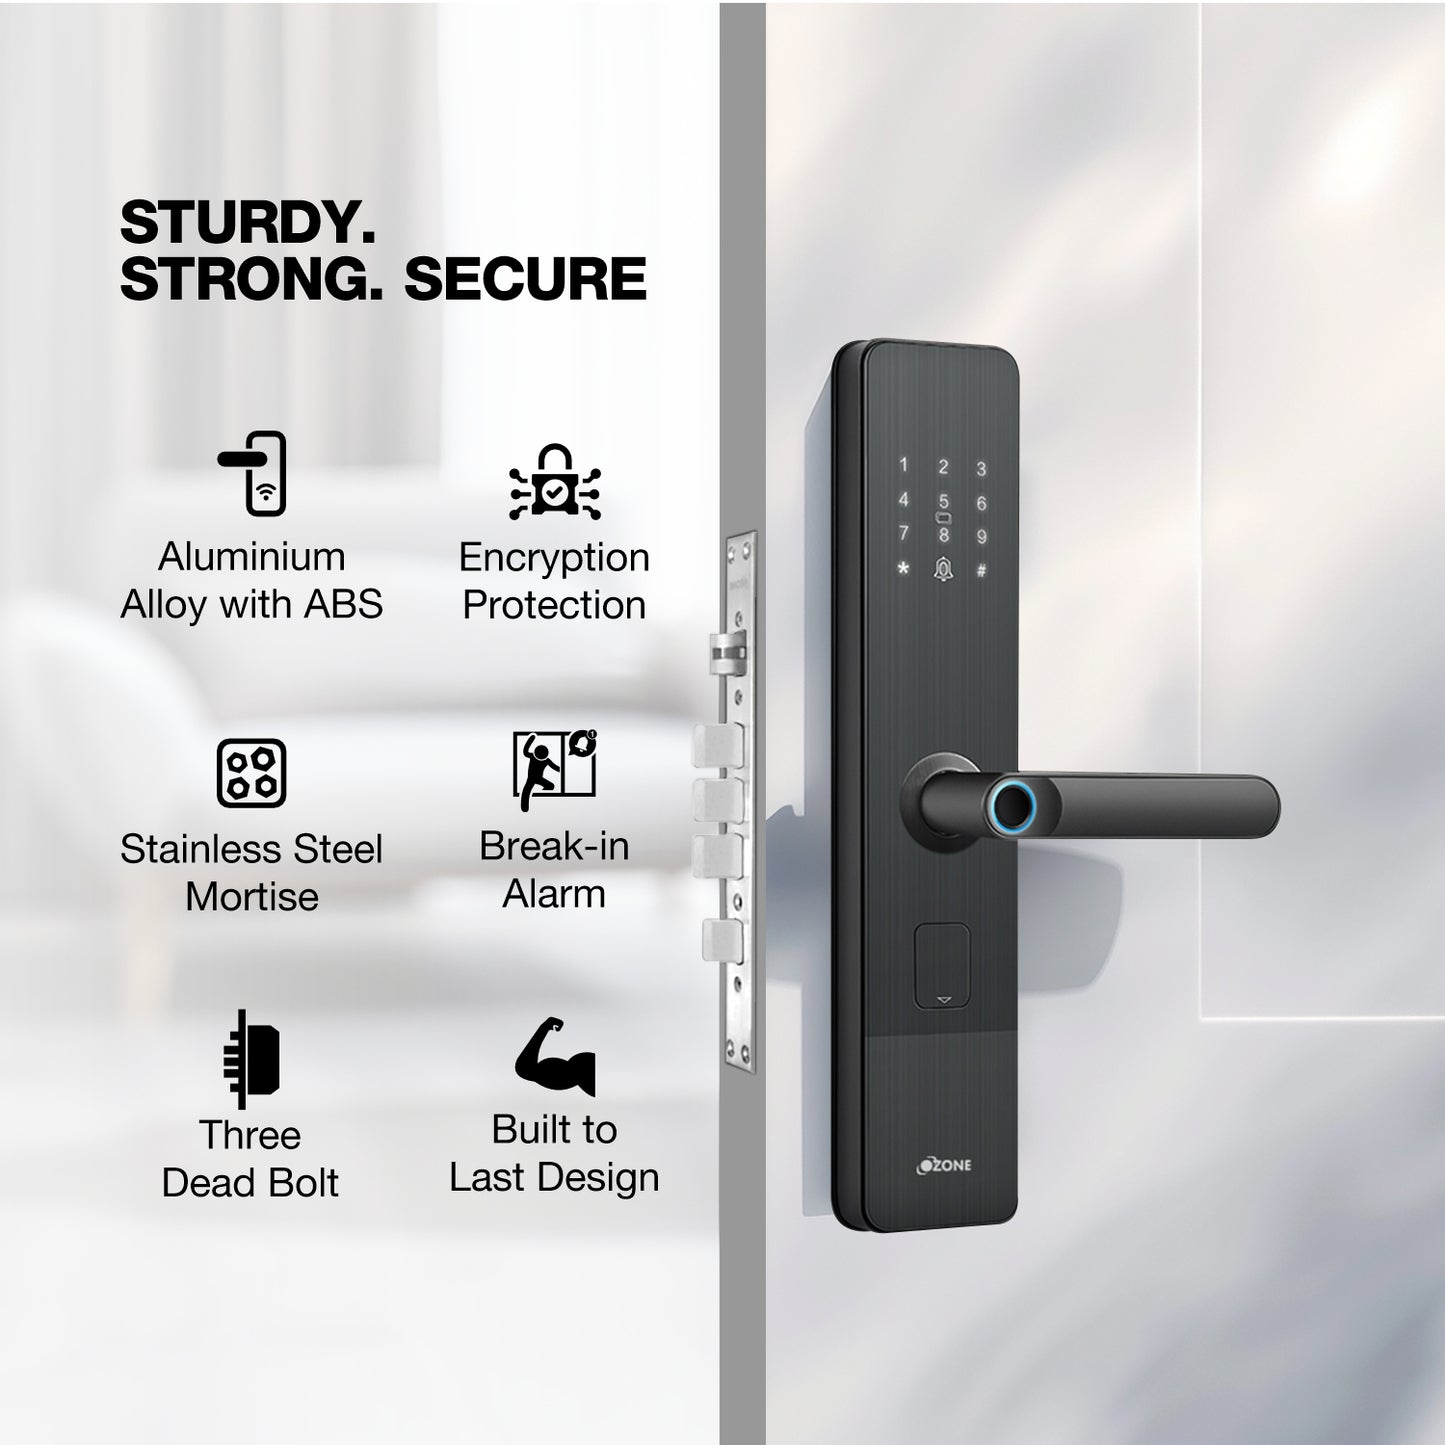 Morphy Life NXT Smart Lock with 5-way Unlock for External Doors | Free Installation | Door Thickness: 35-80 mm